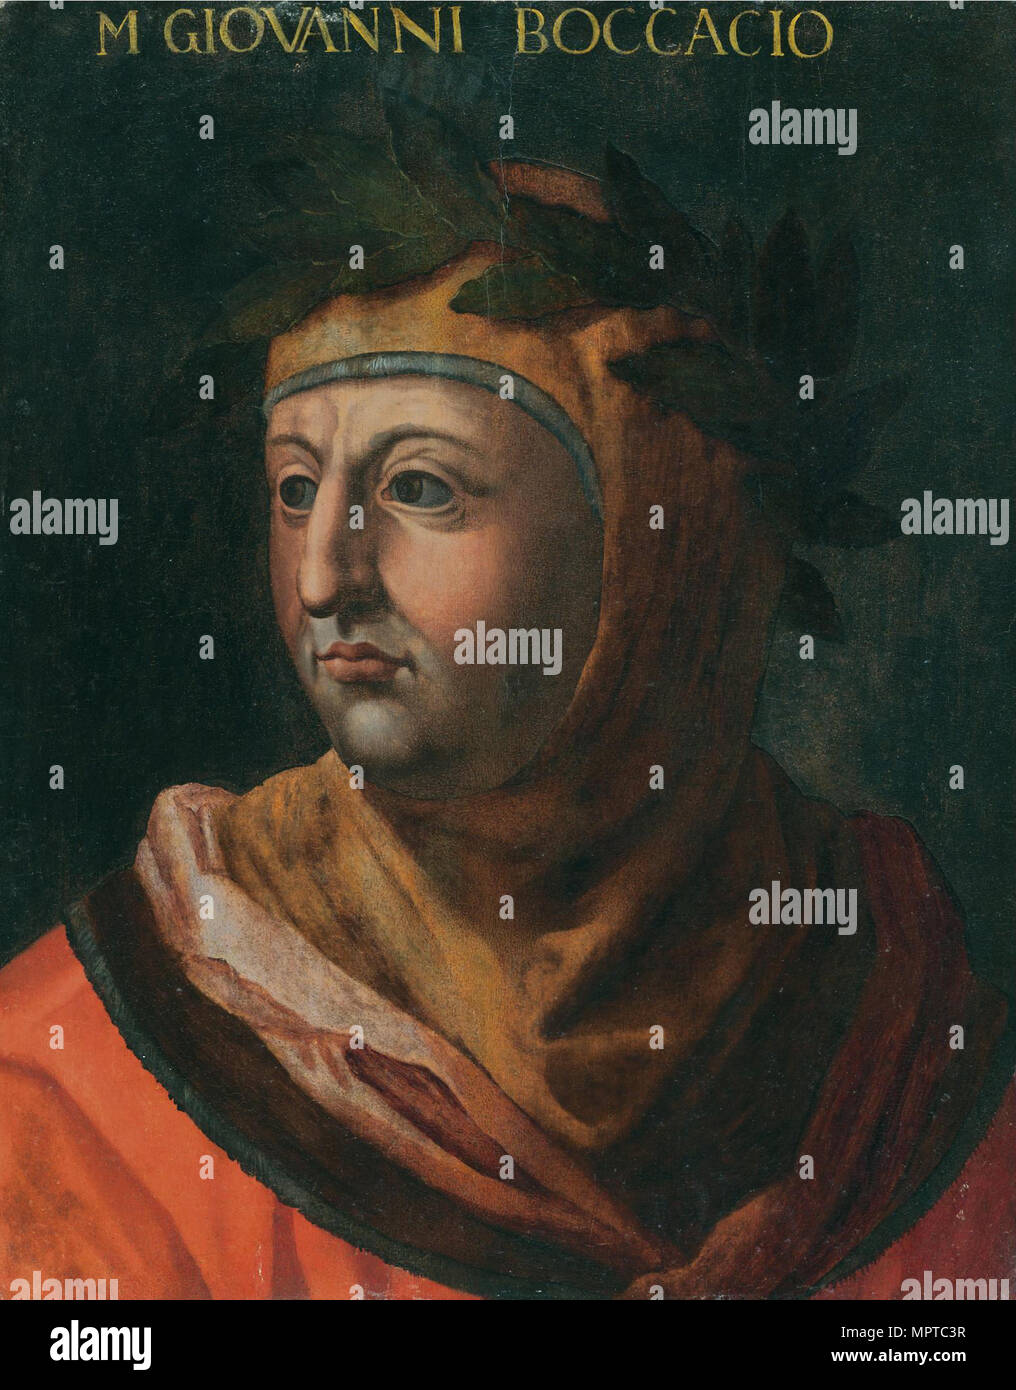 Ritratto di Giovanni Boccaccio. Foto Stock